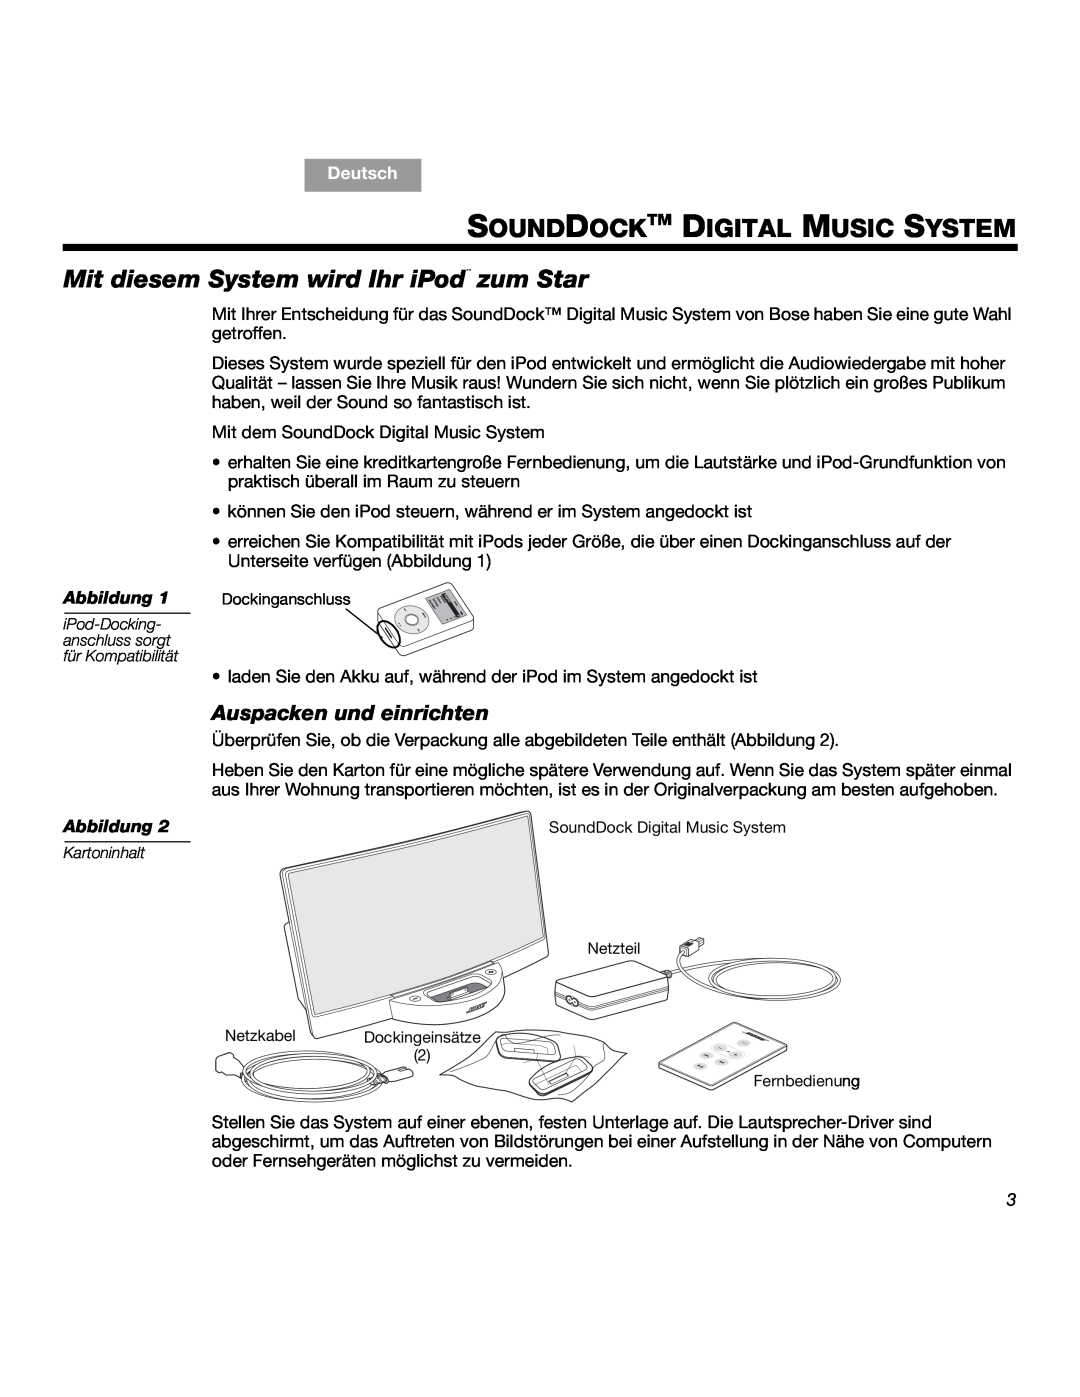 Bose SOUNDDOCKTM Sounddocktm Digital Music System, Mit diesem System wird Ihr iPod¨ zum Star, Auspacken und einrichten 